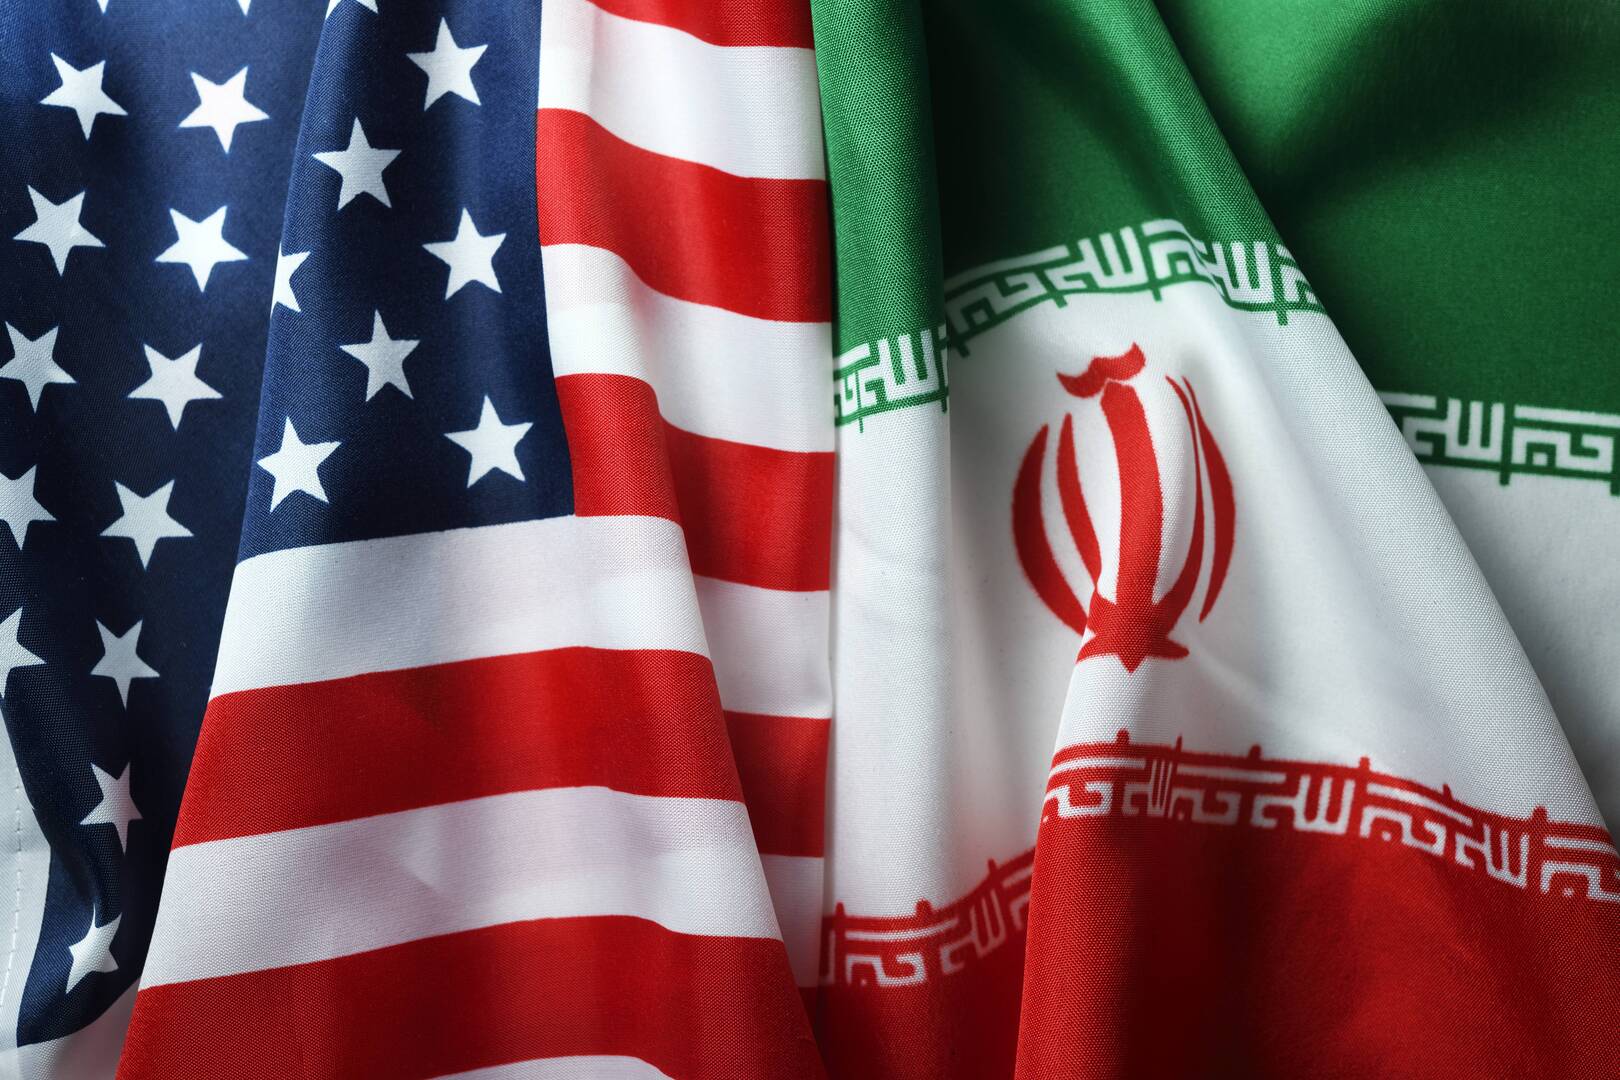 رويترز: إيران أبلغت واشنطن بأن ردها على إسرائيل لن يكون تصعيديا